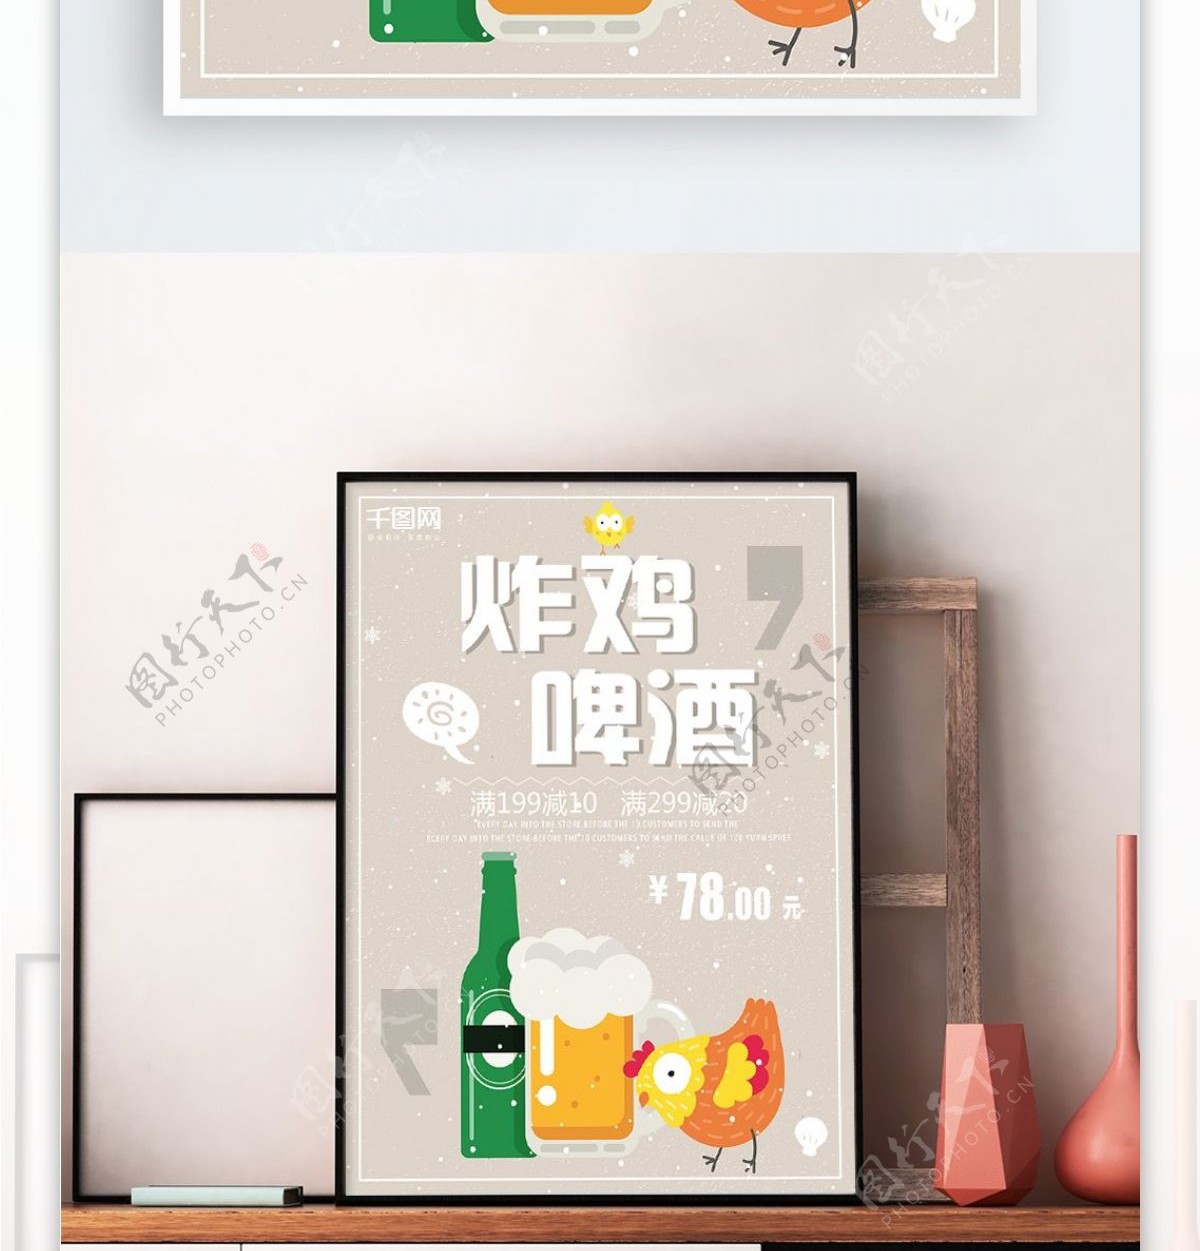 灰色背景简约大气卡通美味炸鸡啤酒宣传海报